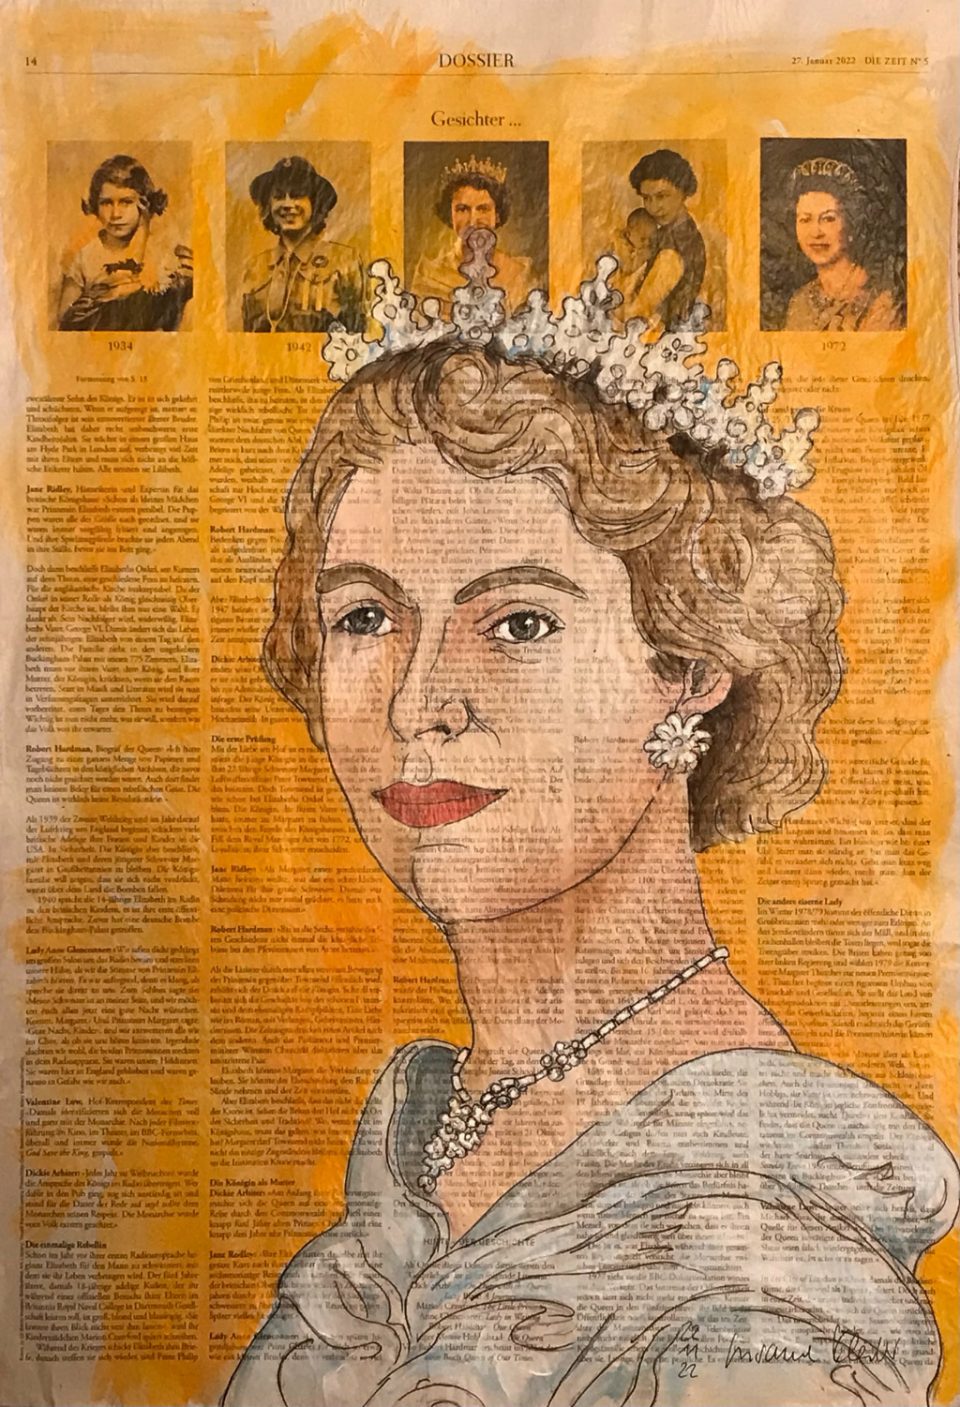 Porträt von Queen Elizabeth auf ganzer Zeitungsseite 56 x 40 cm